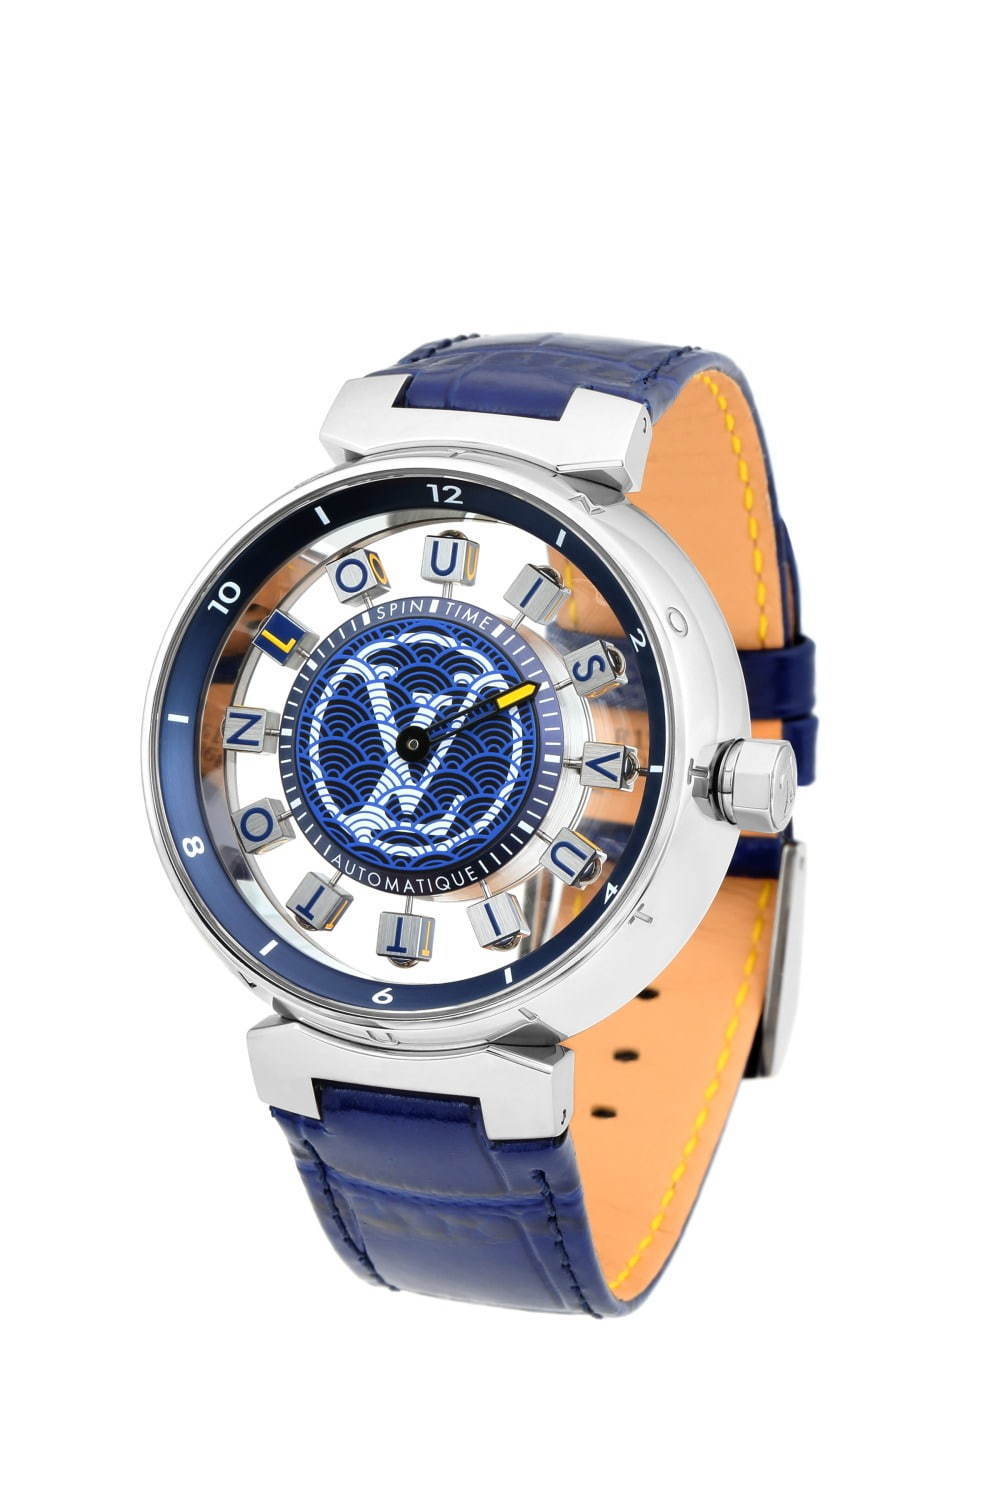 ルイ・ヴィトン “回転キューブが時を示す”腕時計に限定モデル、日本の ...